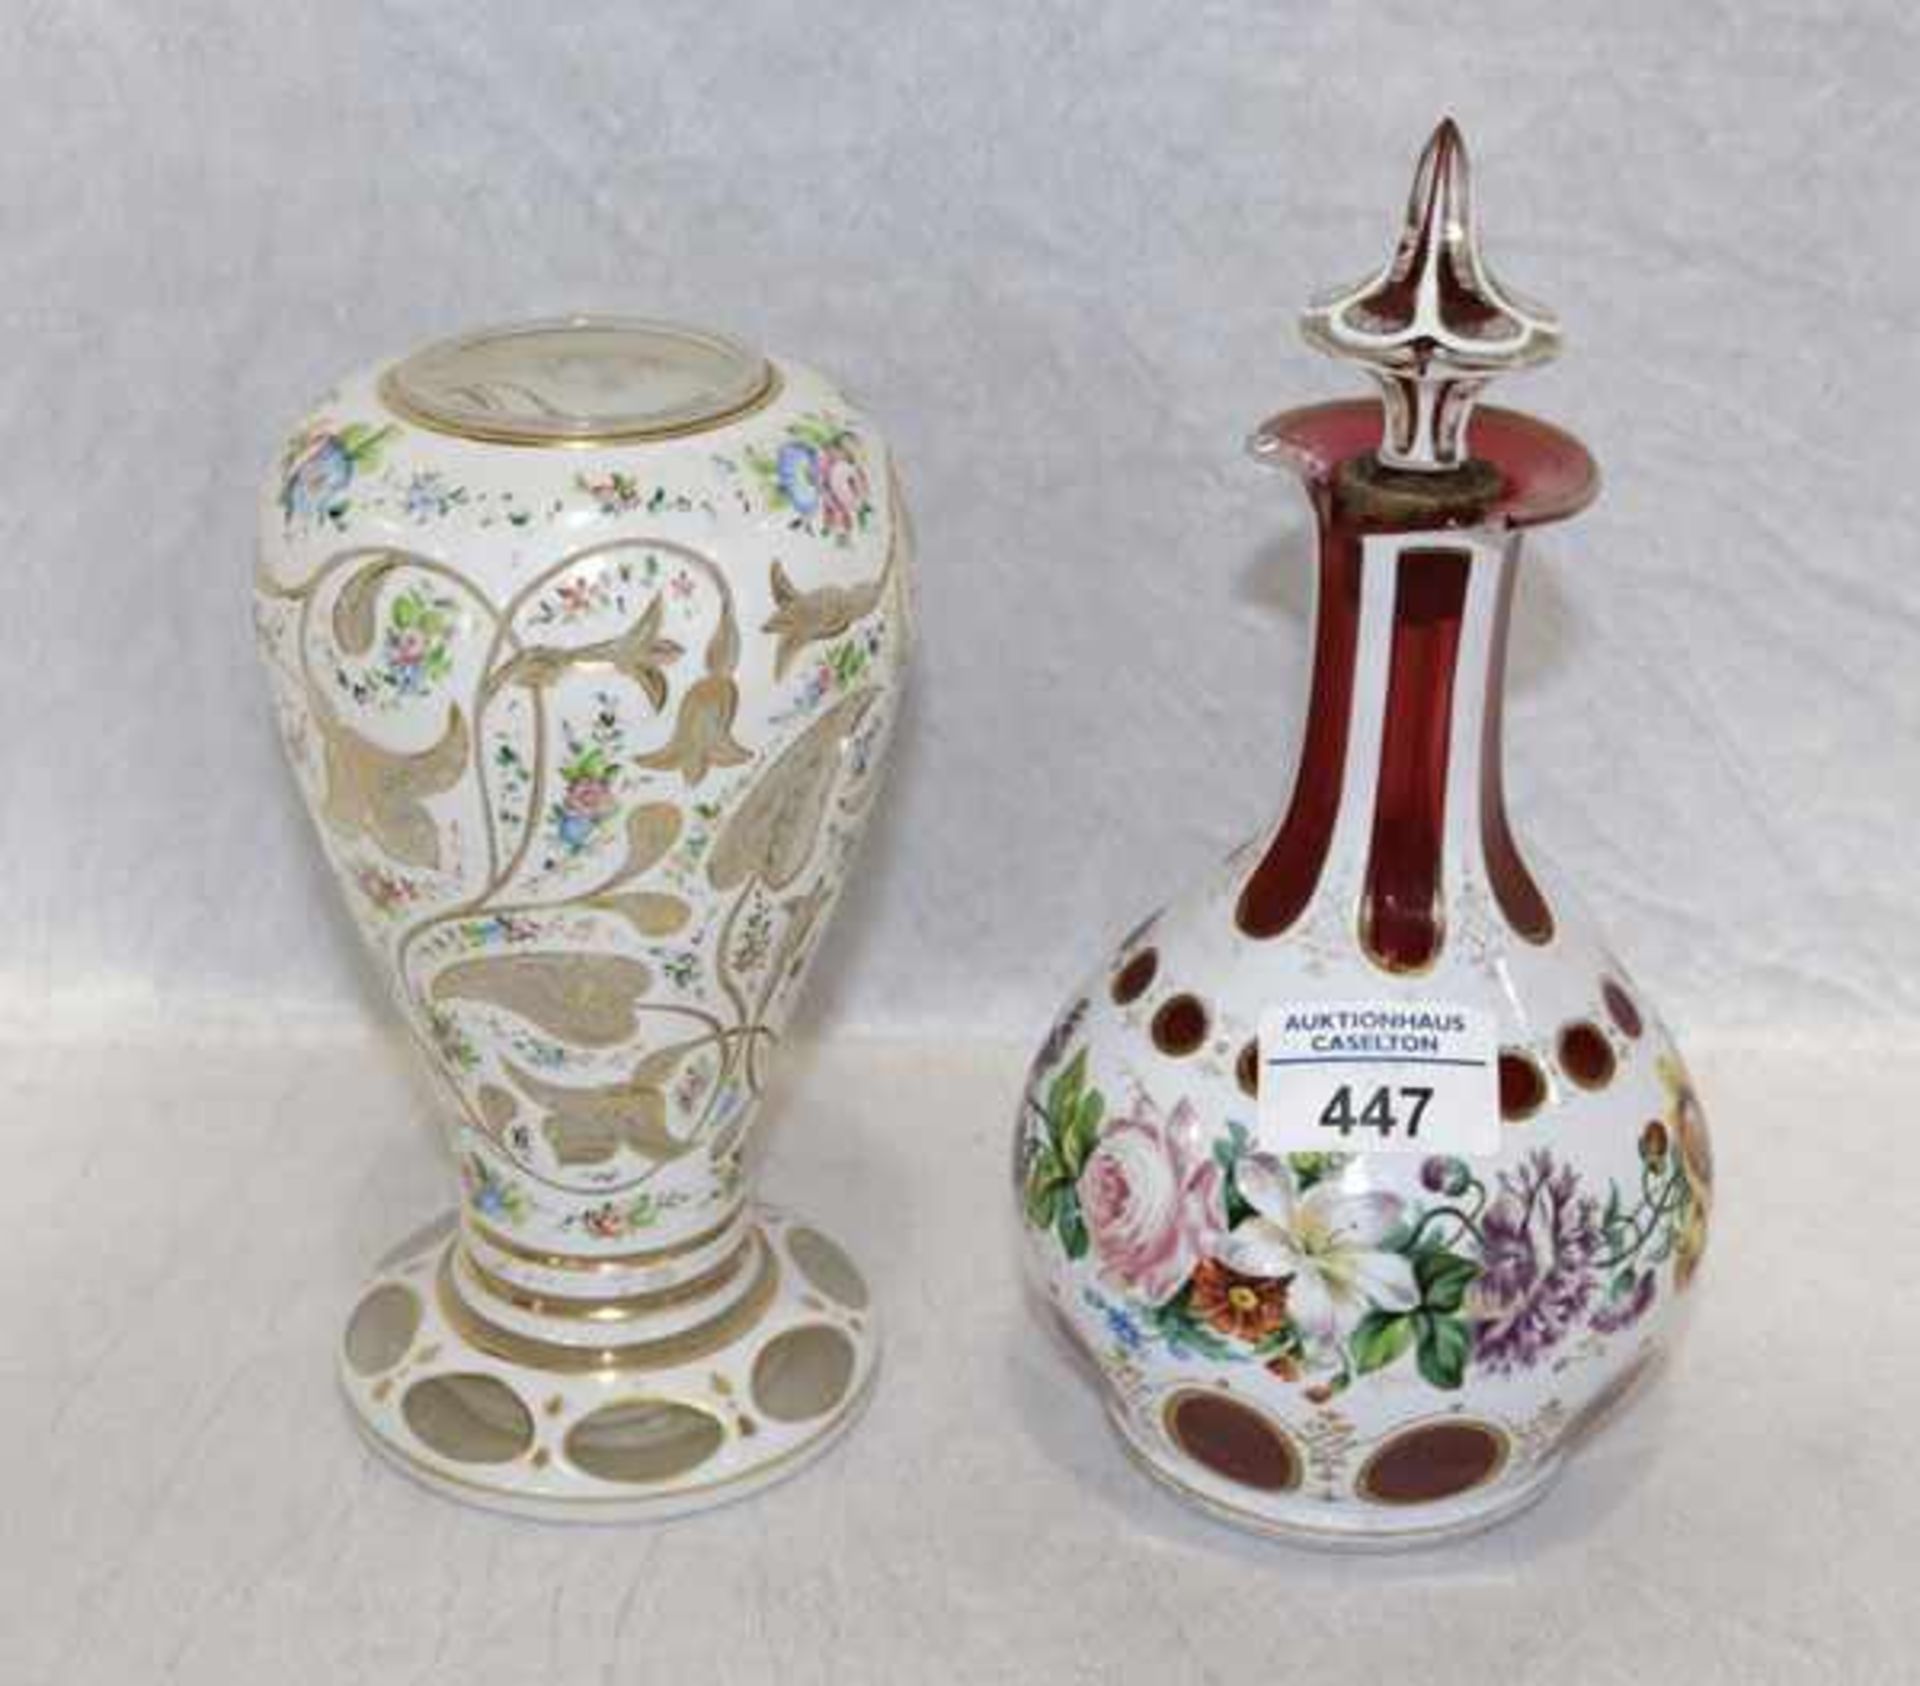 Böhmische Glasvase mit weißem Überfang und Blumenmalerei, H 19 cm, und böhmische Glaskaraffe, rot